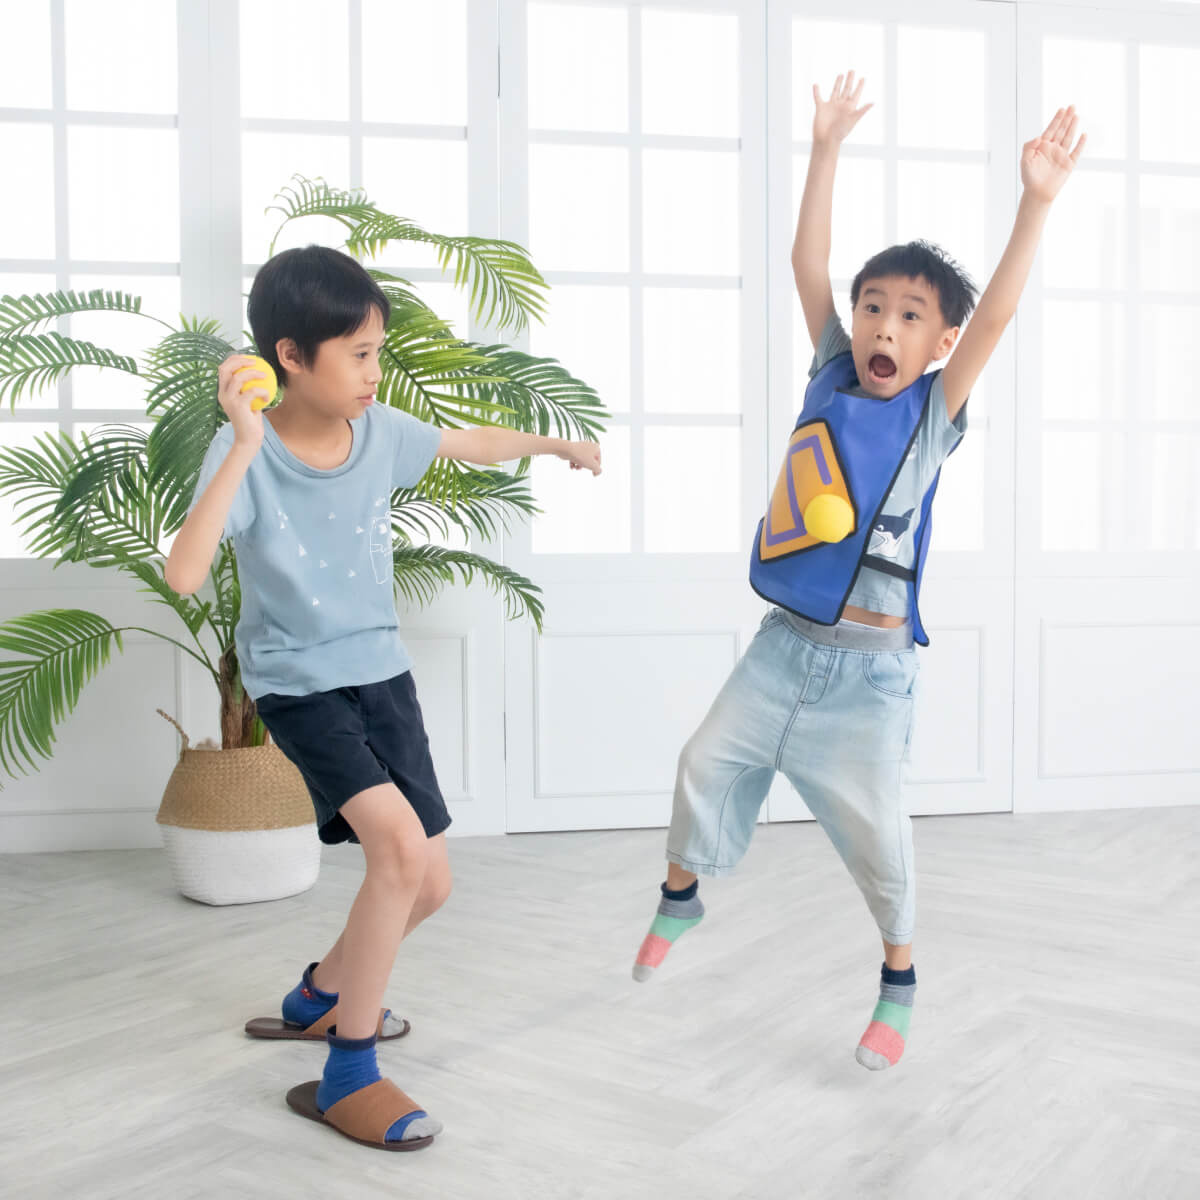 創客maker探索盒將肌肉能量與動力具象化，讓幼兒培養日常運動習慣。